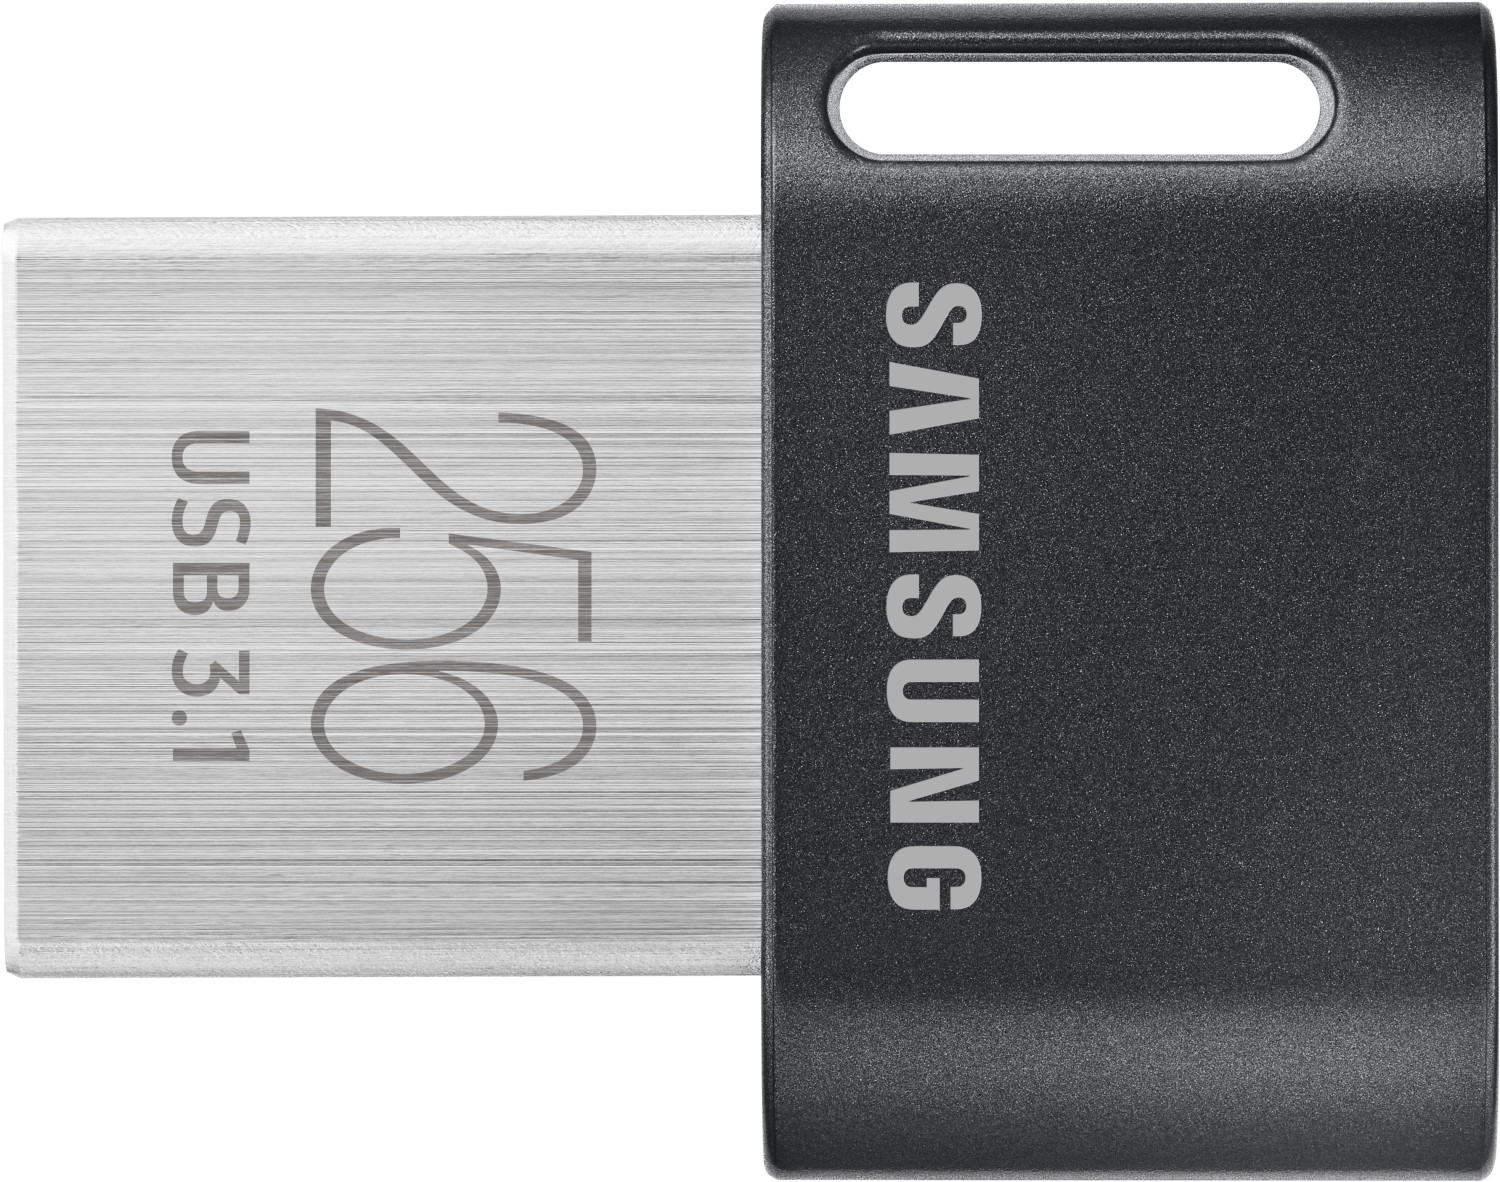 Samsung Fit Plus USB 3.0 256GB (2020)